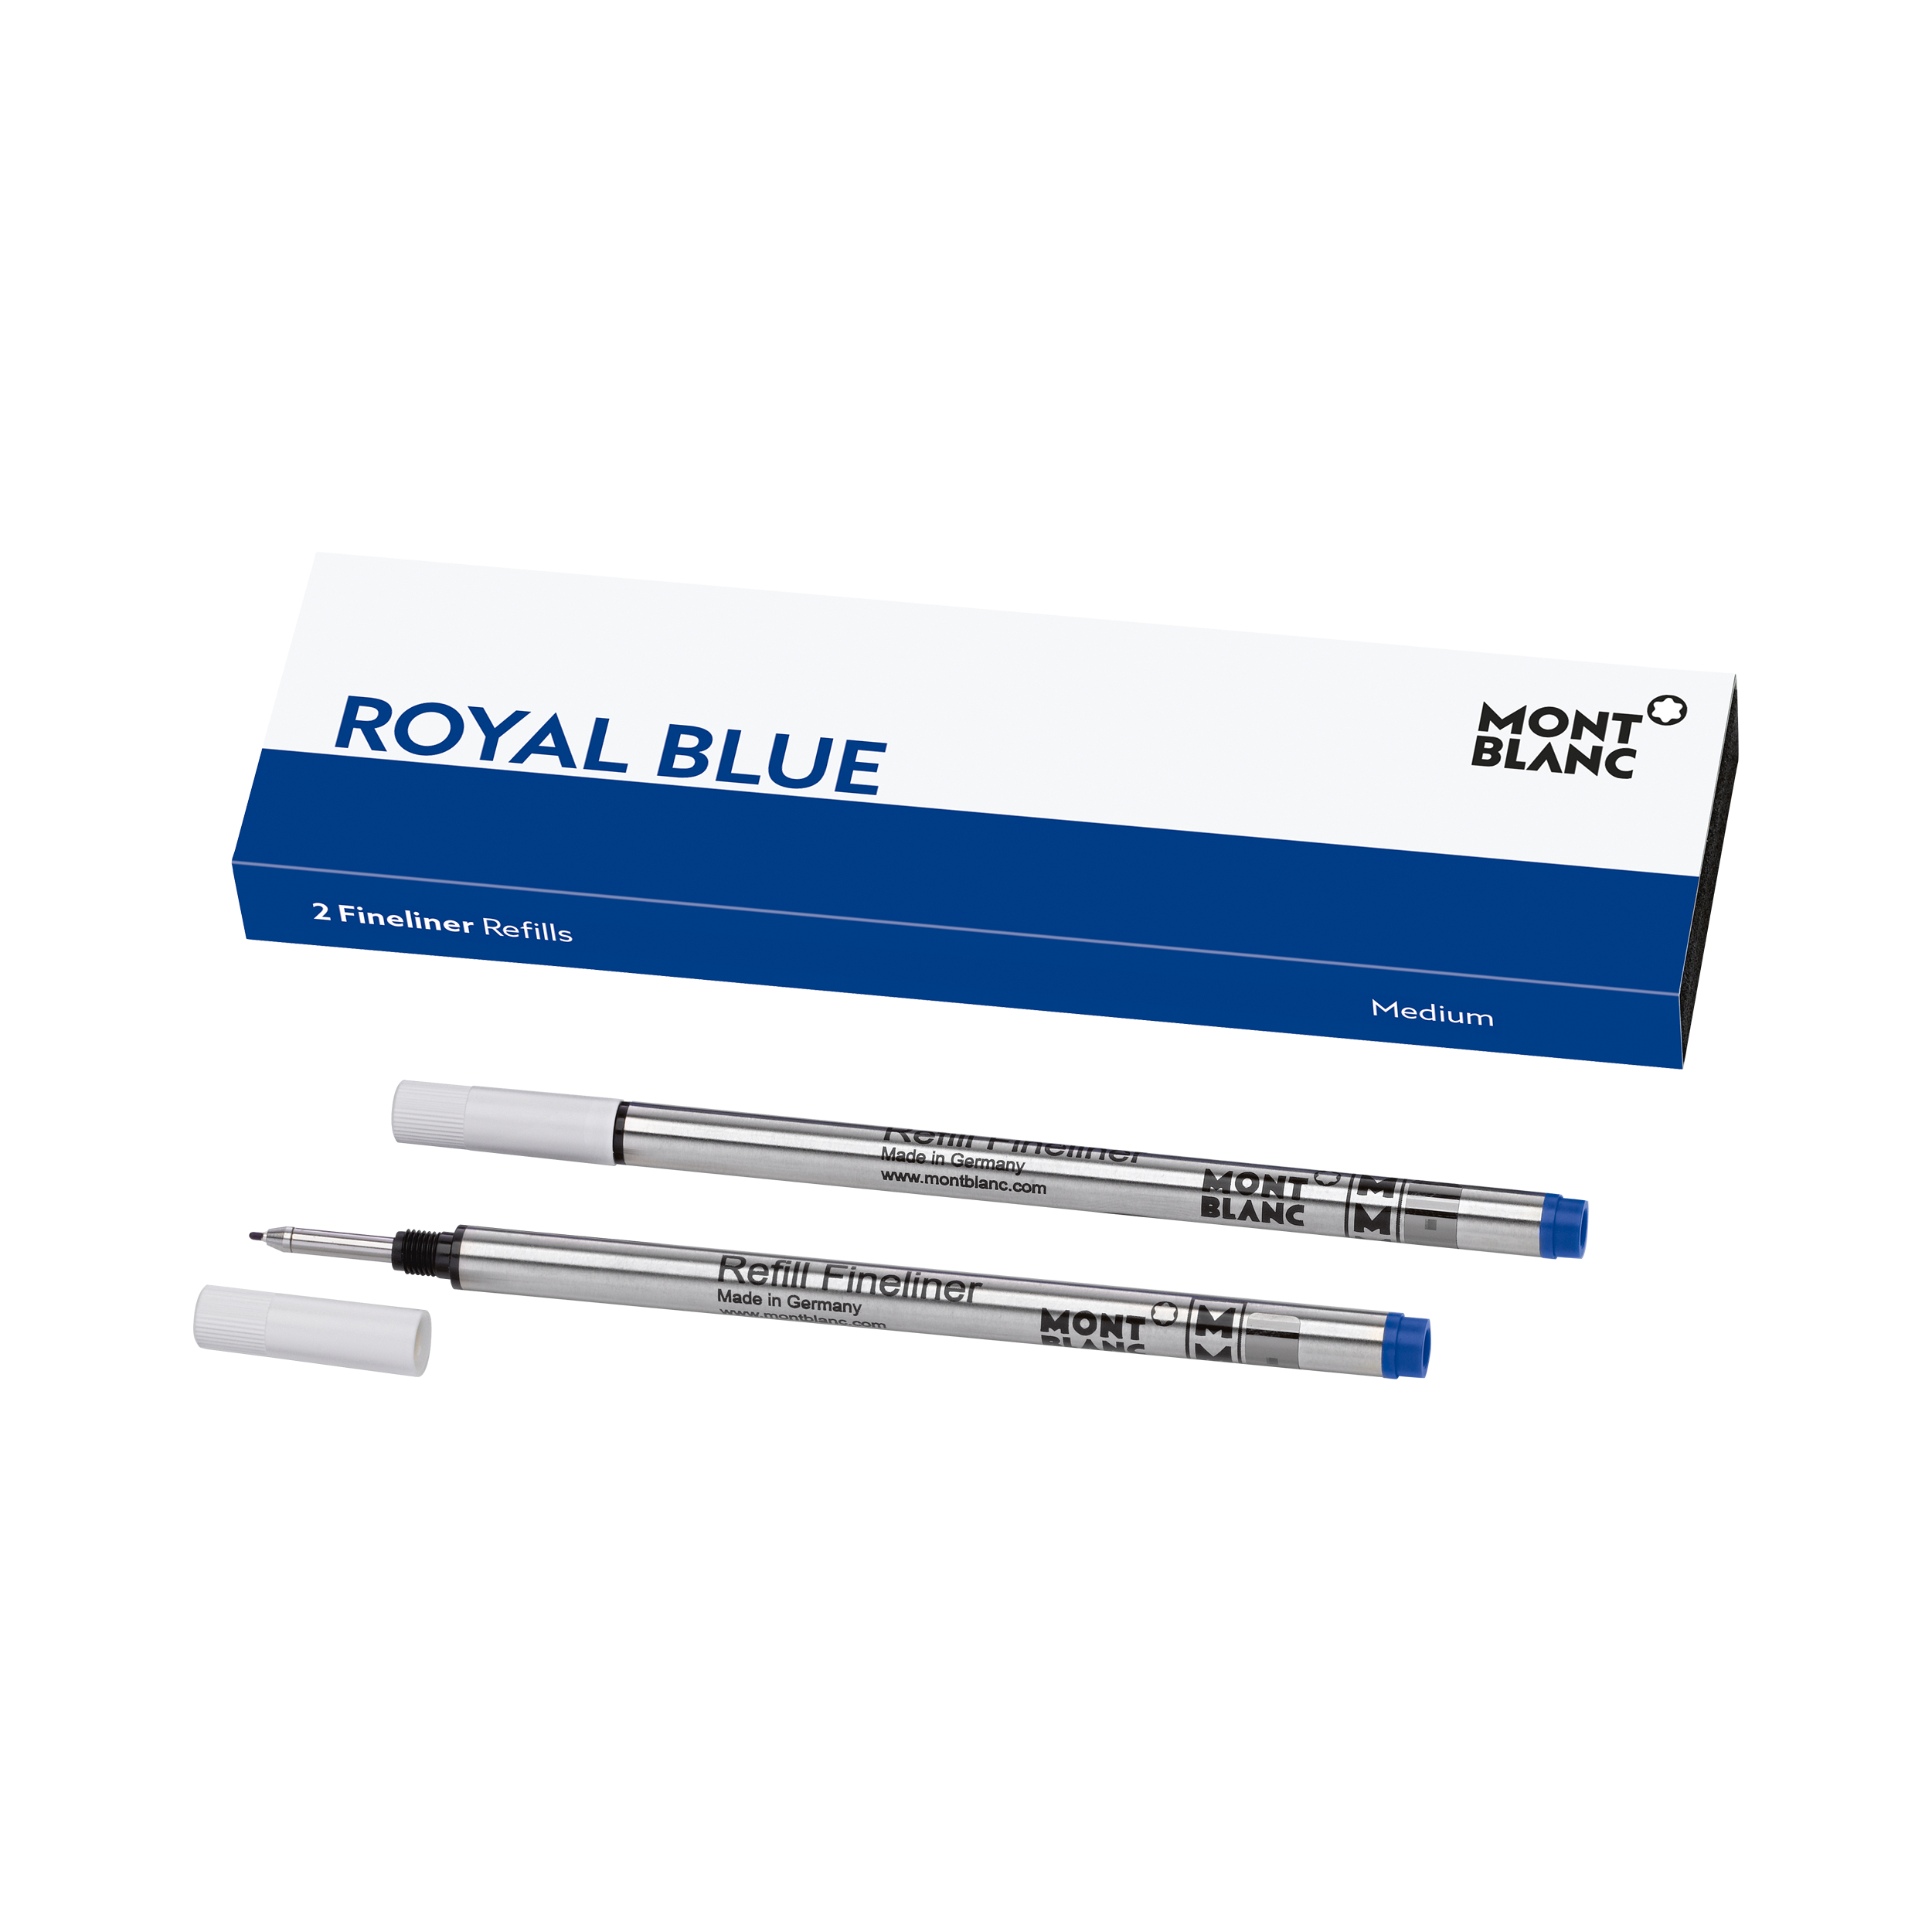 2 Fineliner Refills Medium Royal Blue, image 1